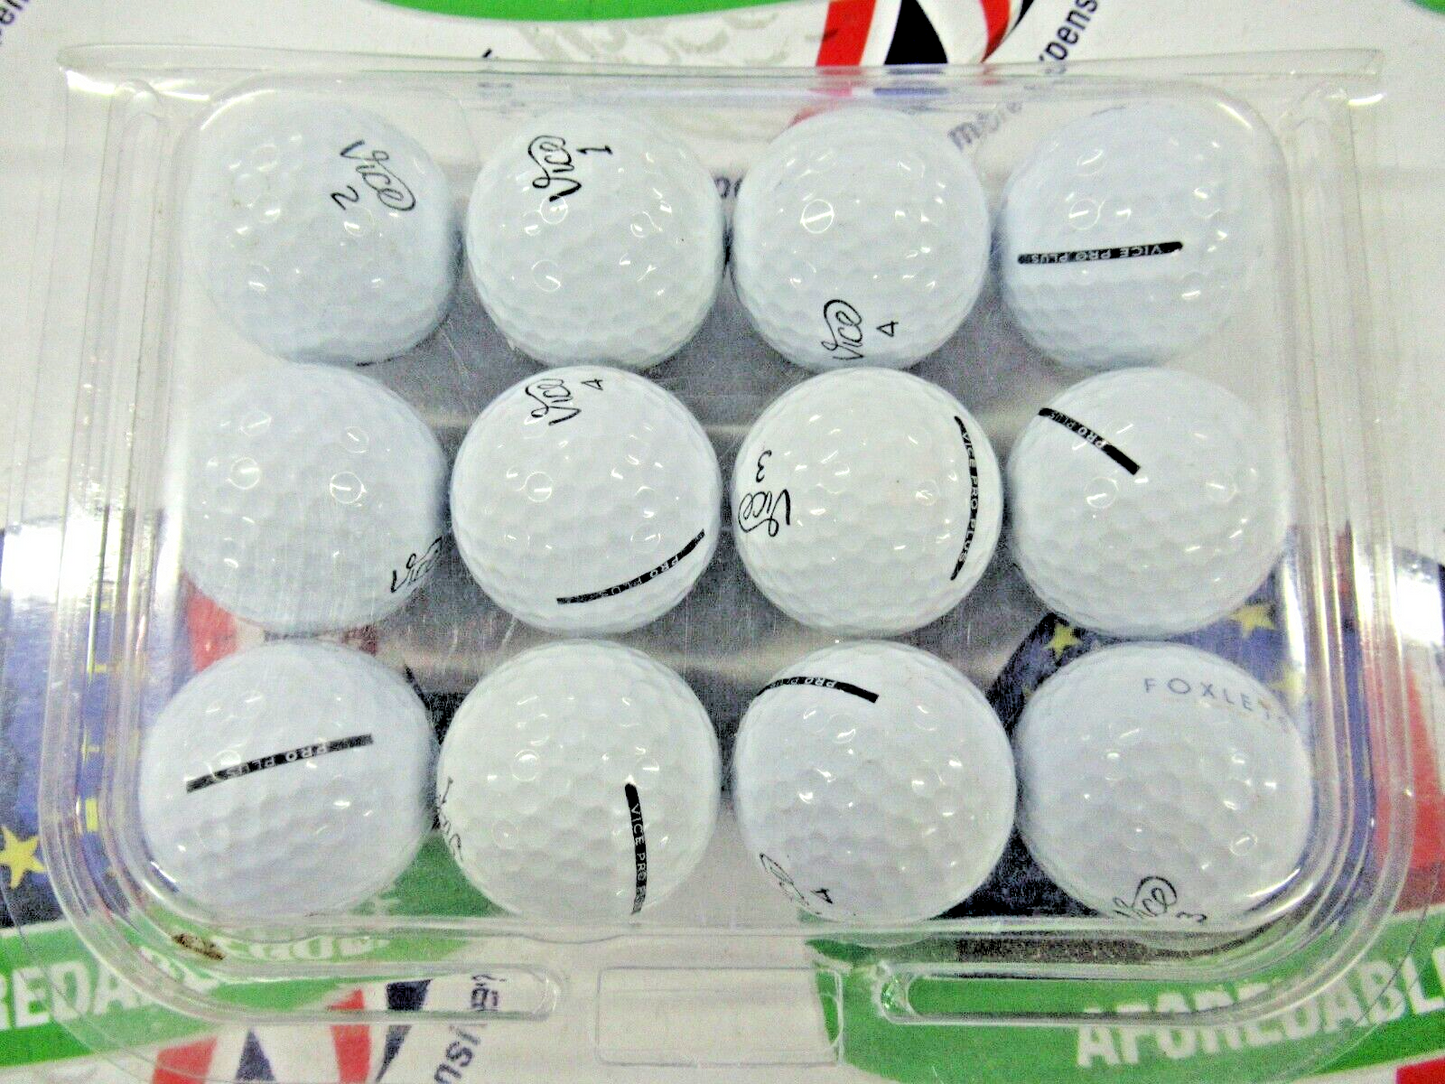 12 vice pro plus golf balls pearl/pearl 1 grade